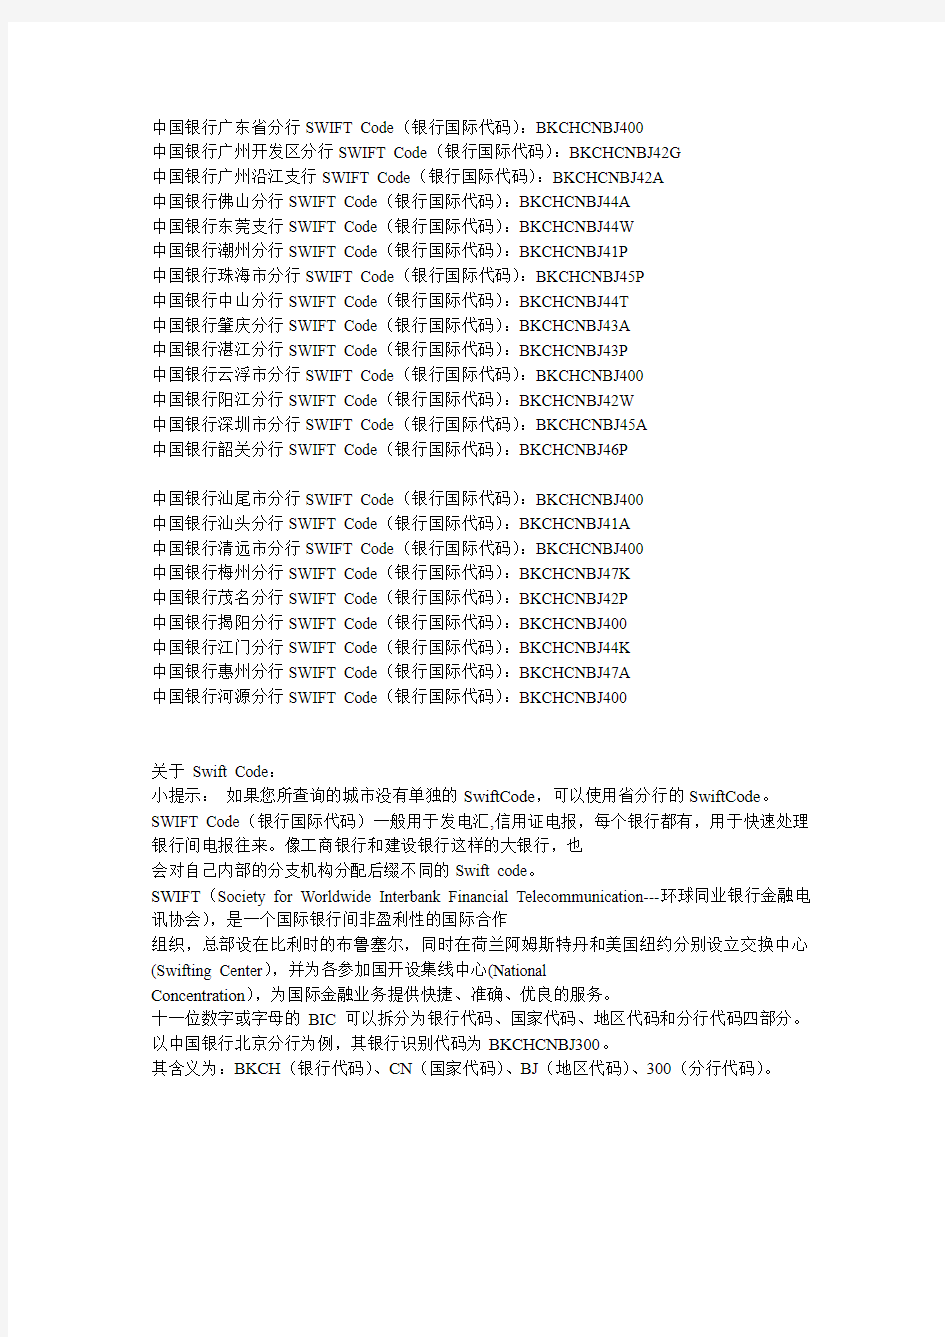 中国银行广东省各市SWIFT Code(银行国际代码)查询